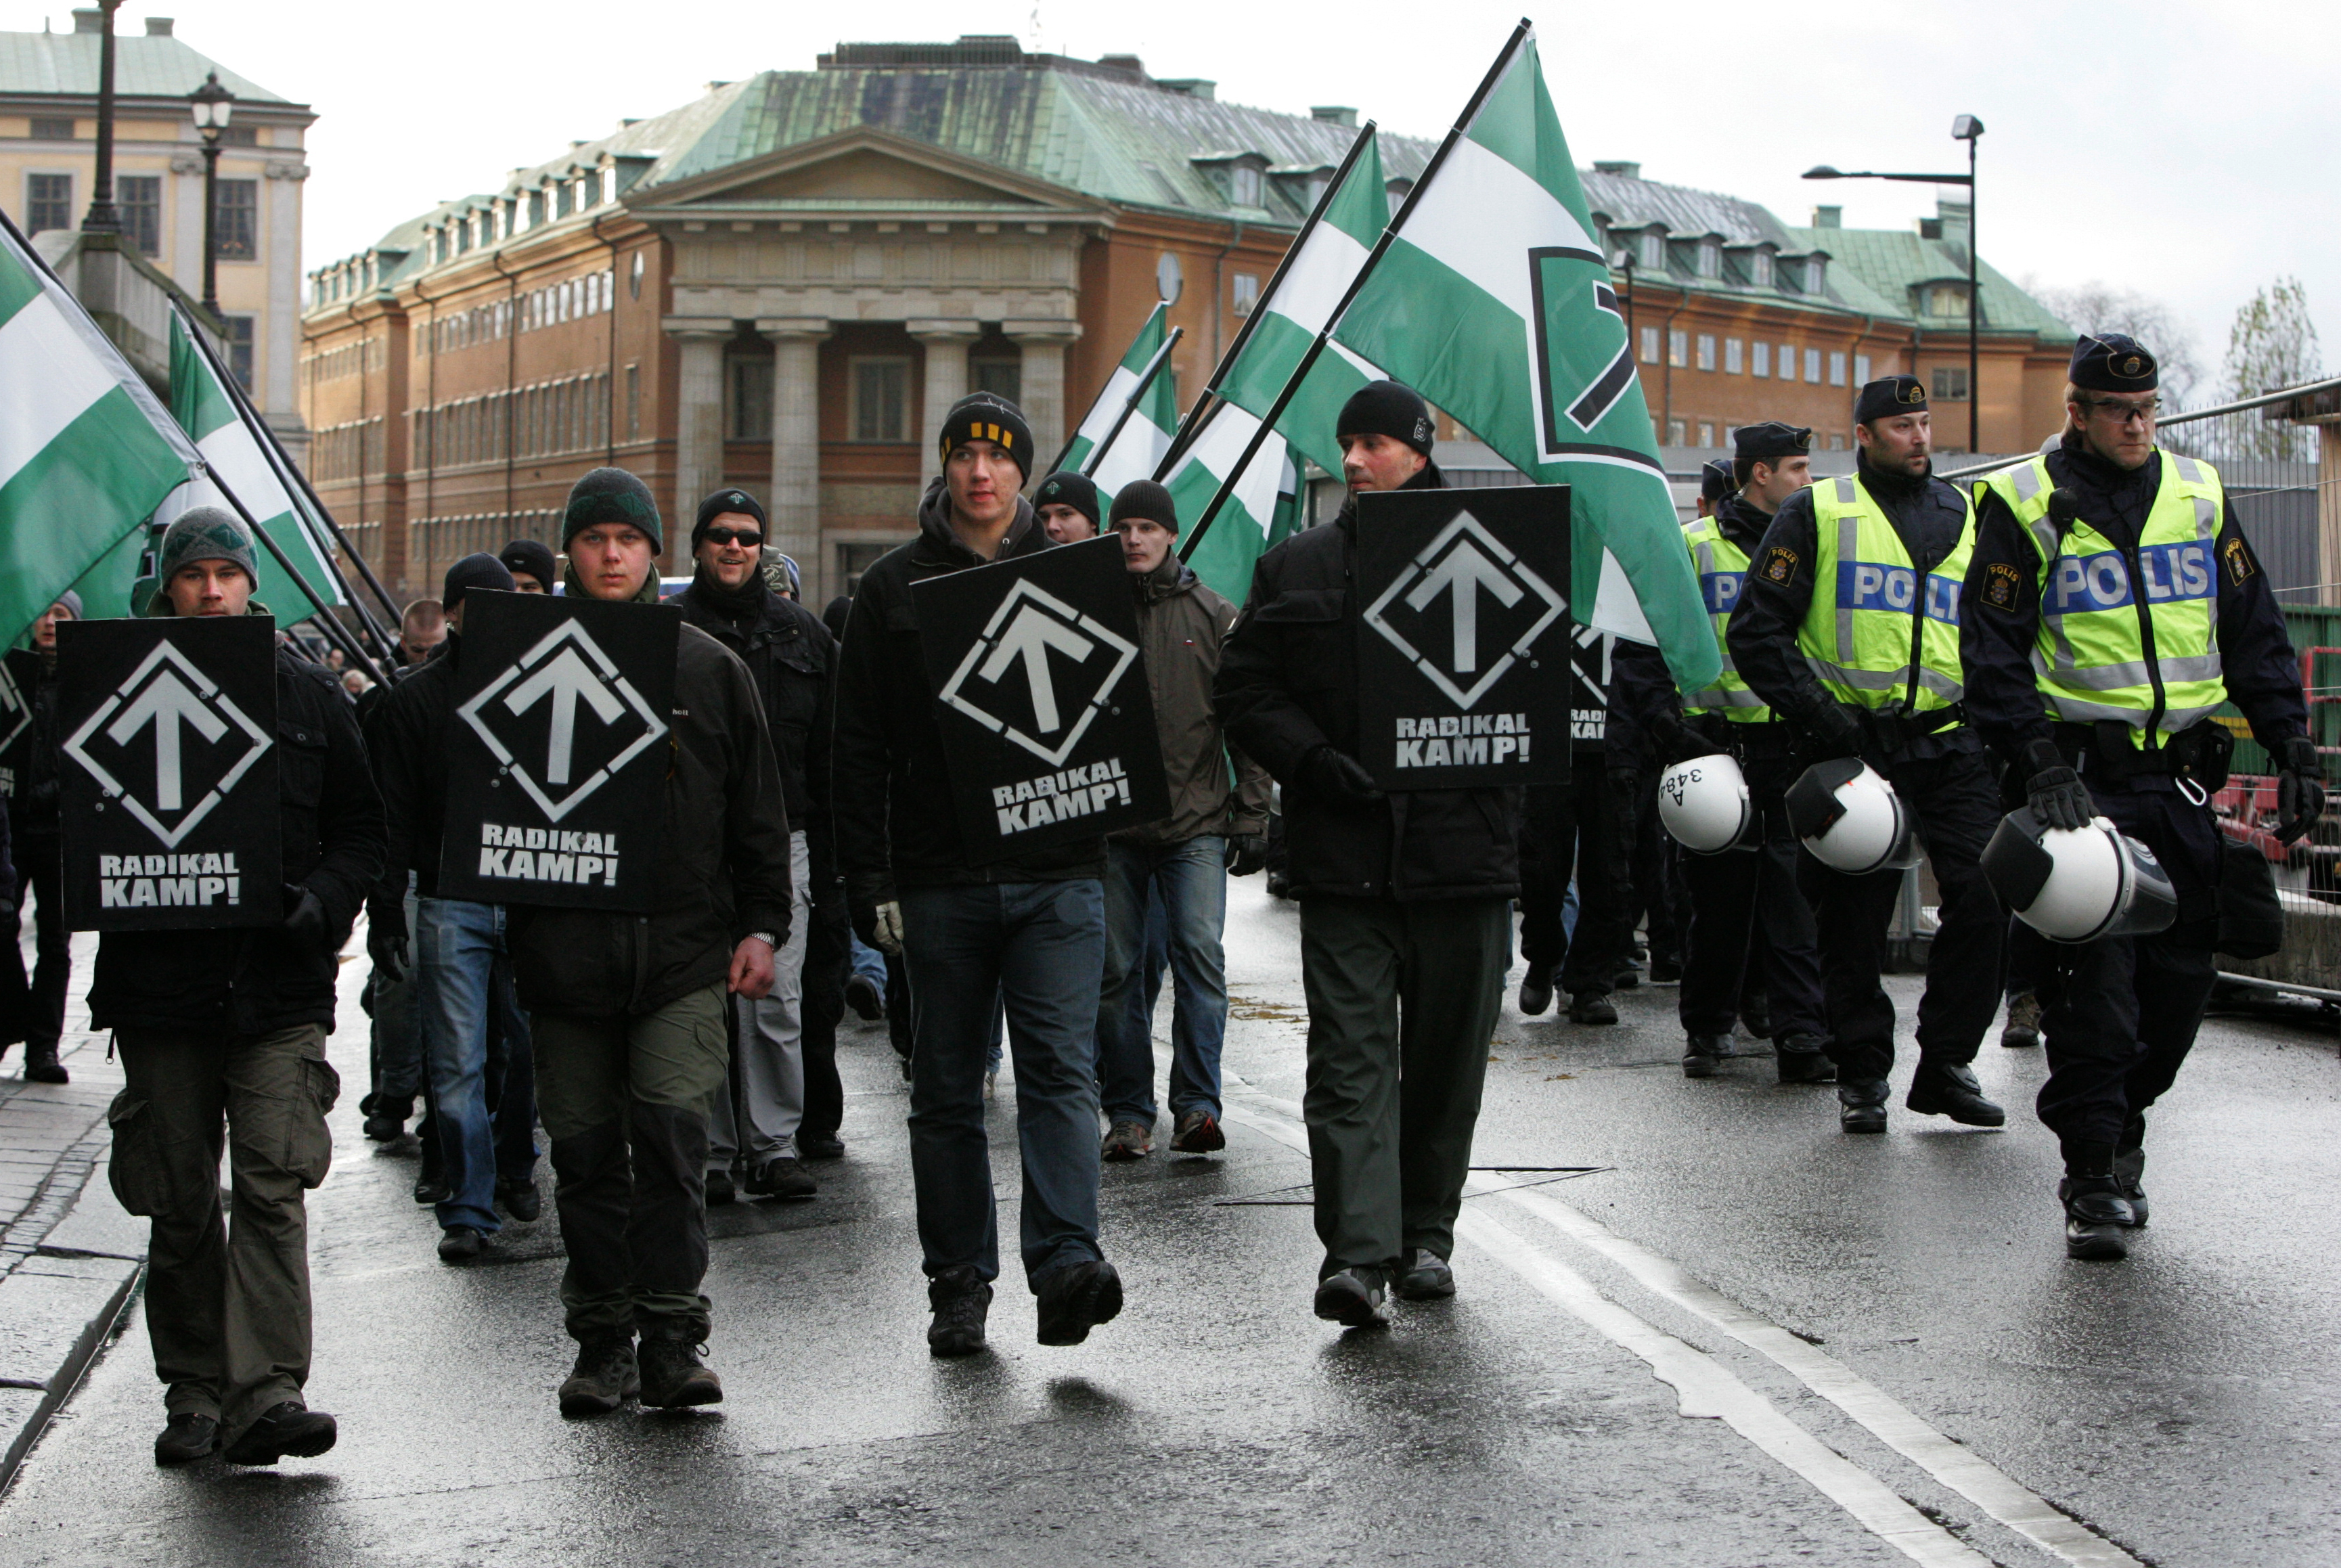 Svenska Motståndsrörelsen sprider sitt budskap i Hudiksvall. Bilden är från en tidigare demonstration i Stockholm.